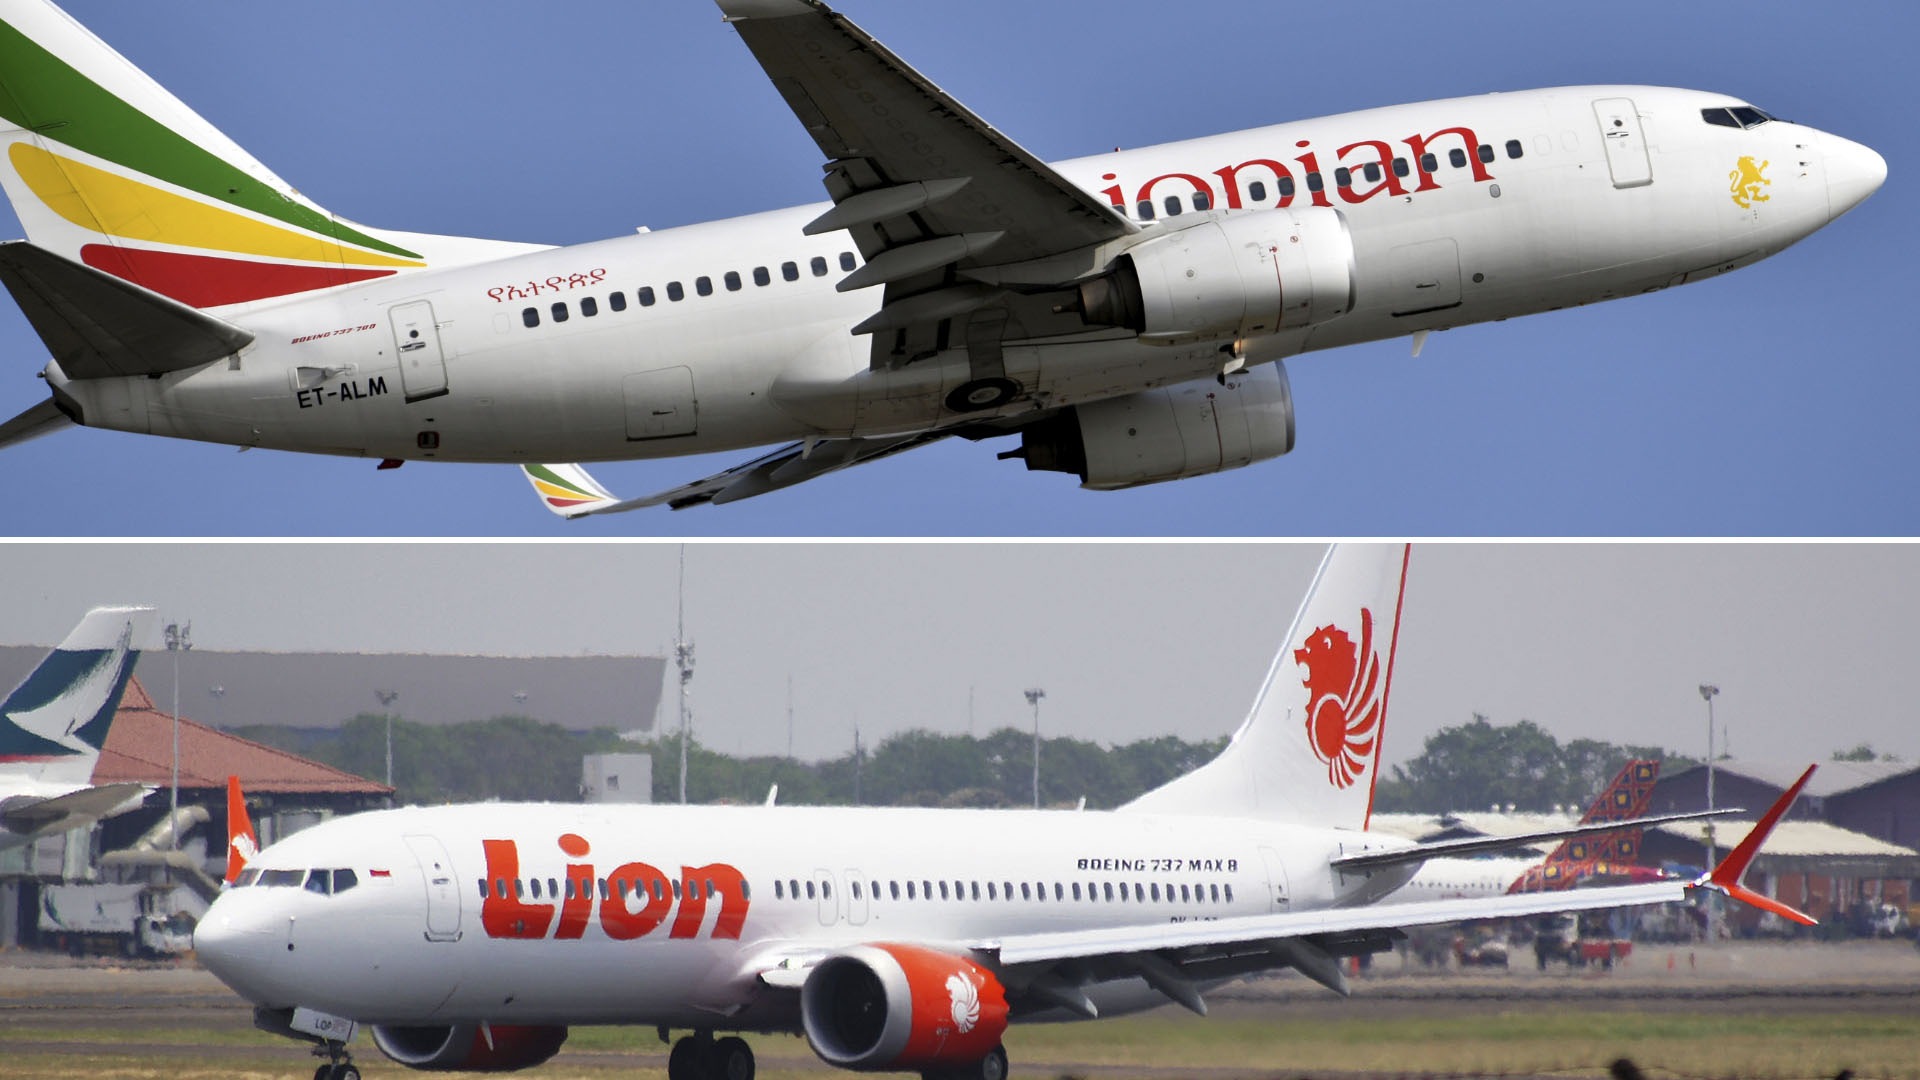 Las autoridades encontraron “semejanzas claras” entre los accidentes de Ethiopian Airlines y Lion Air